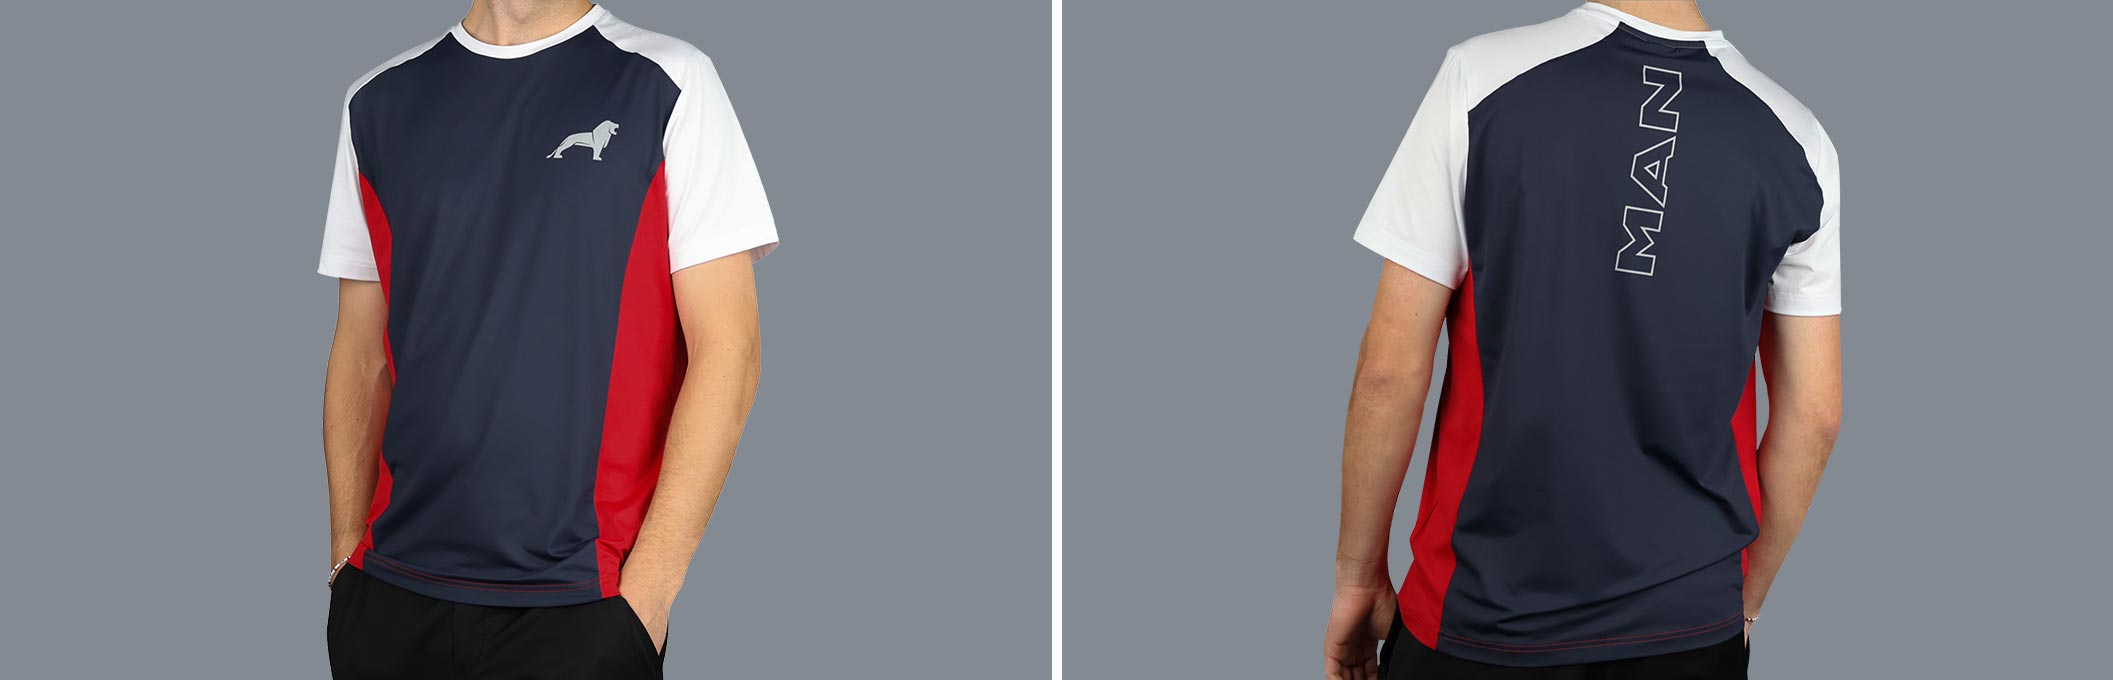 Vorder- und Rückansicht eines mehrfarbigen MAN Funktions T-Shirts aus der Essential Kollektion mit Logo Print auf der Vorderseite und dem Wort "MAN" auf der Rückseite